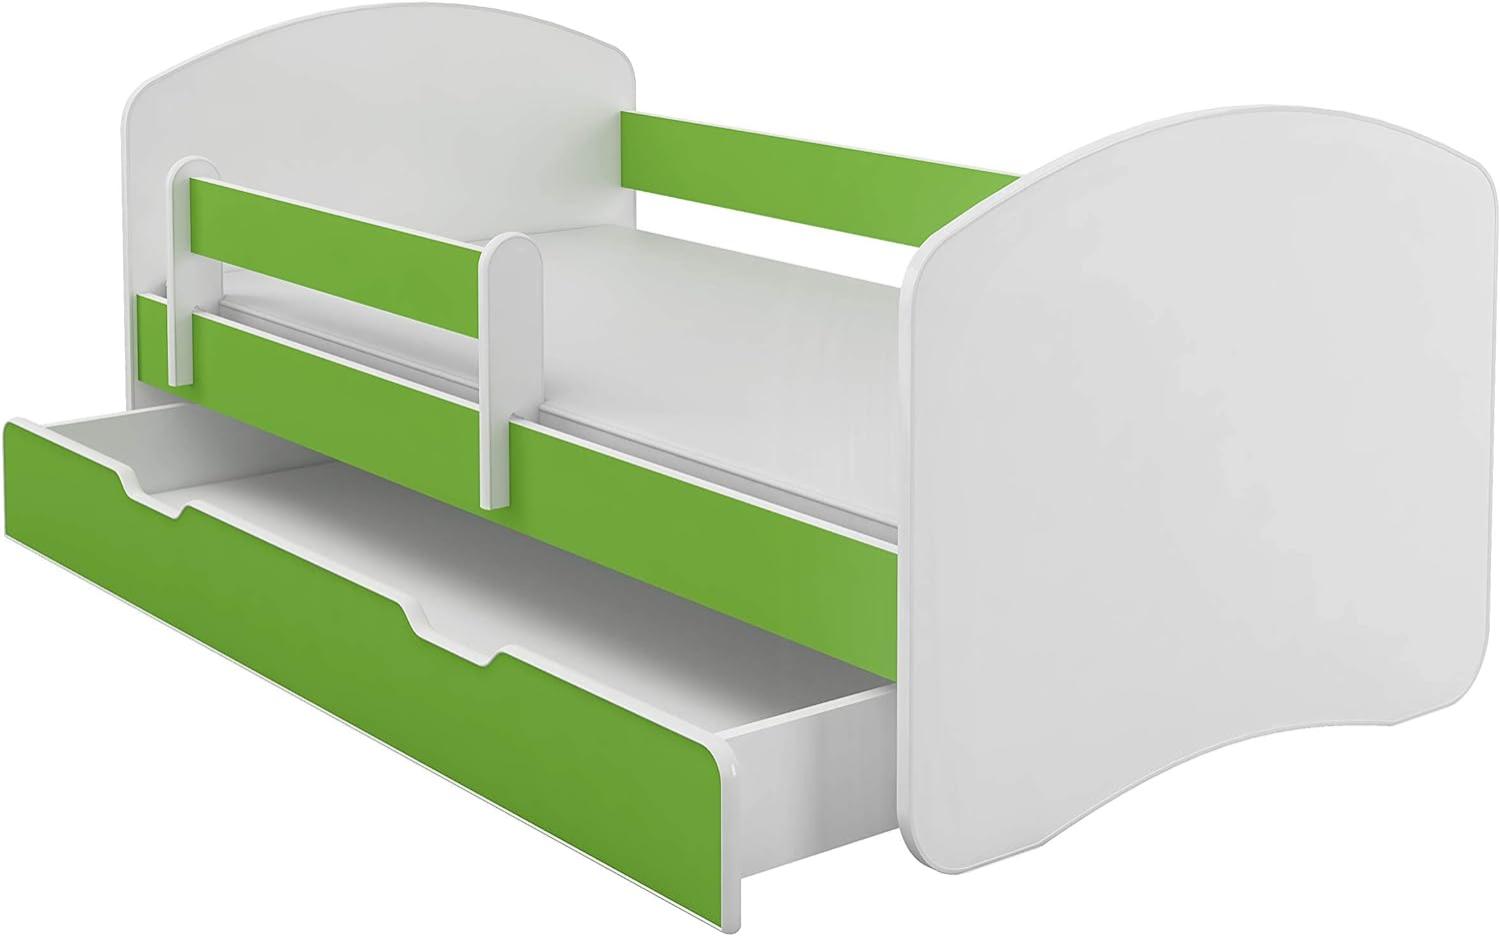 Kinderbett Jugendbett mit einer Schublade und Matratze Weiß ACMA II (140x70 cm + Schublade, Grün) Bild 1